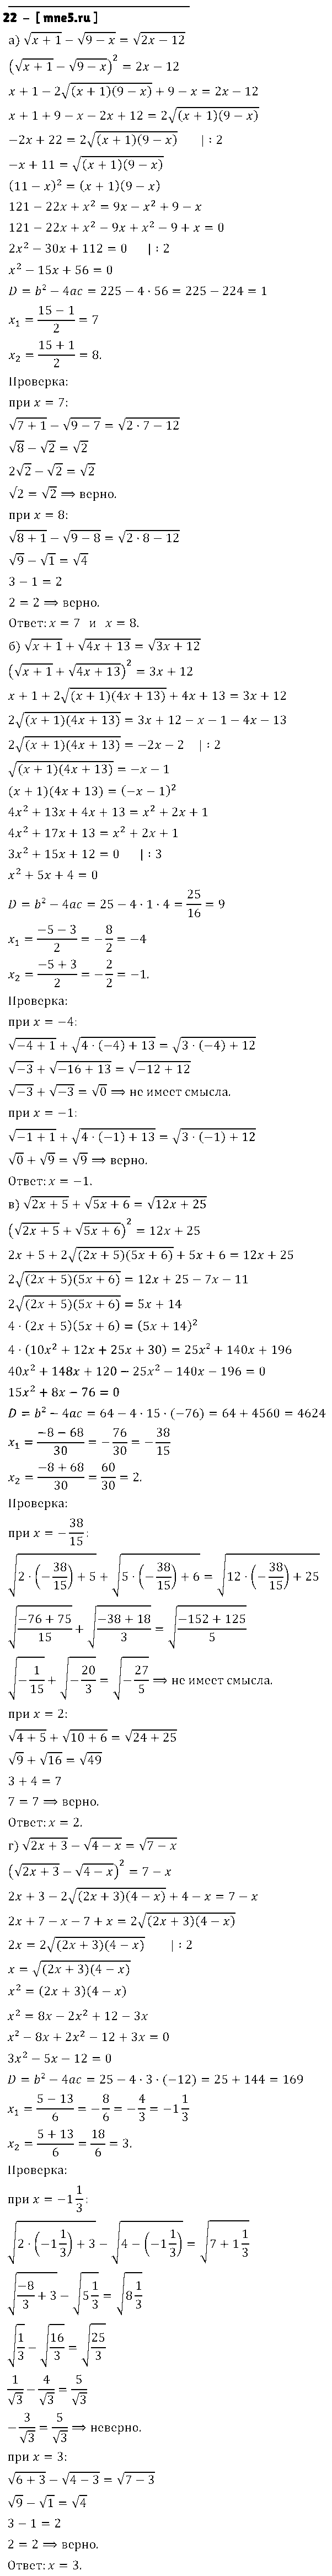 ГДЗ Алгебра 8 класс - 22